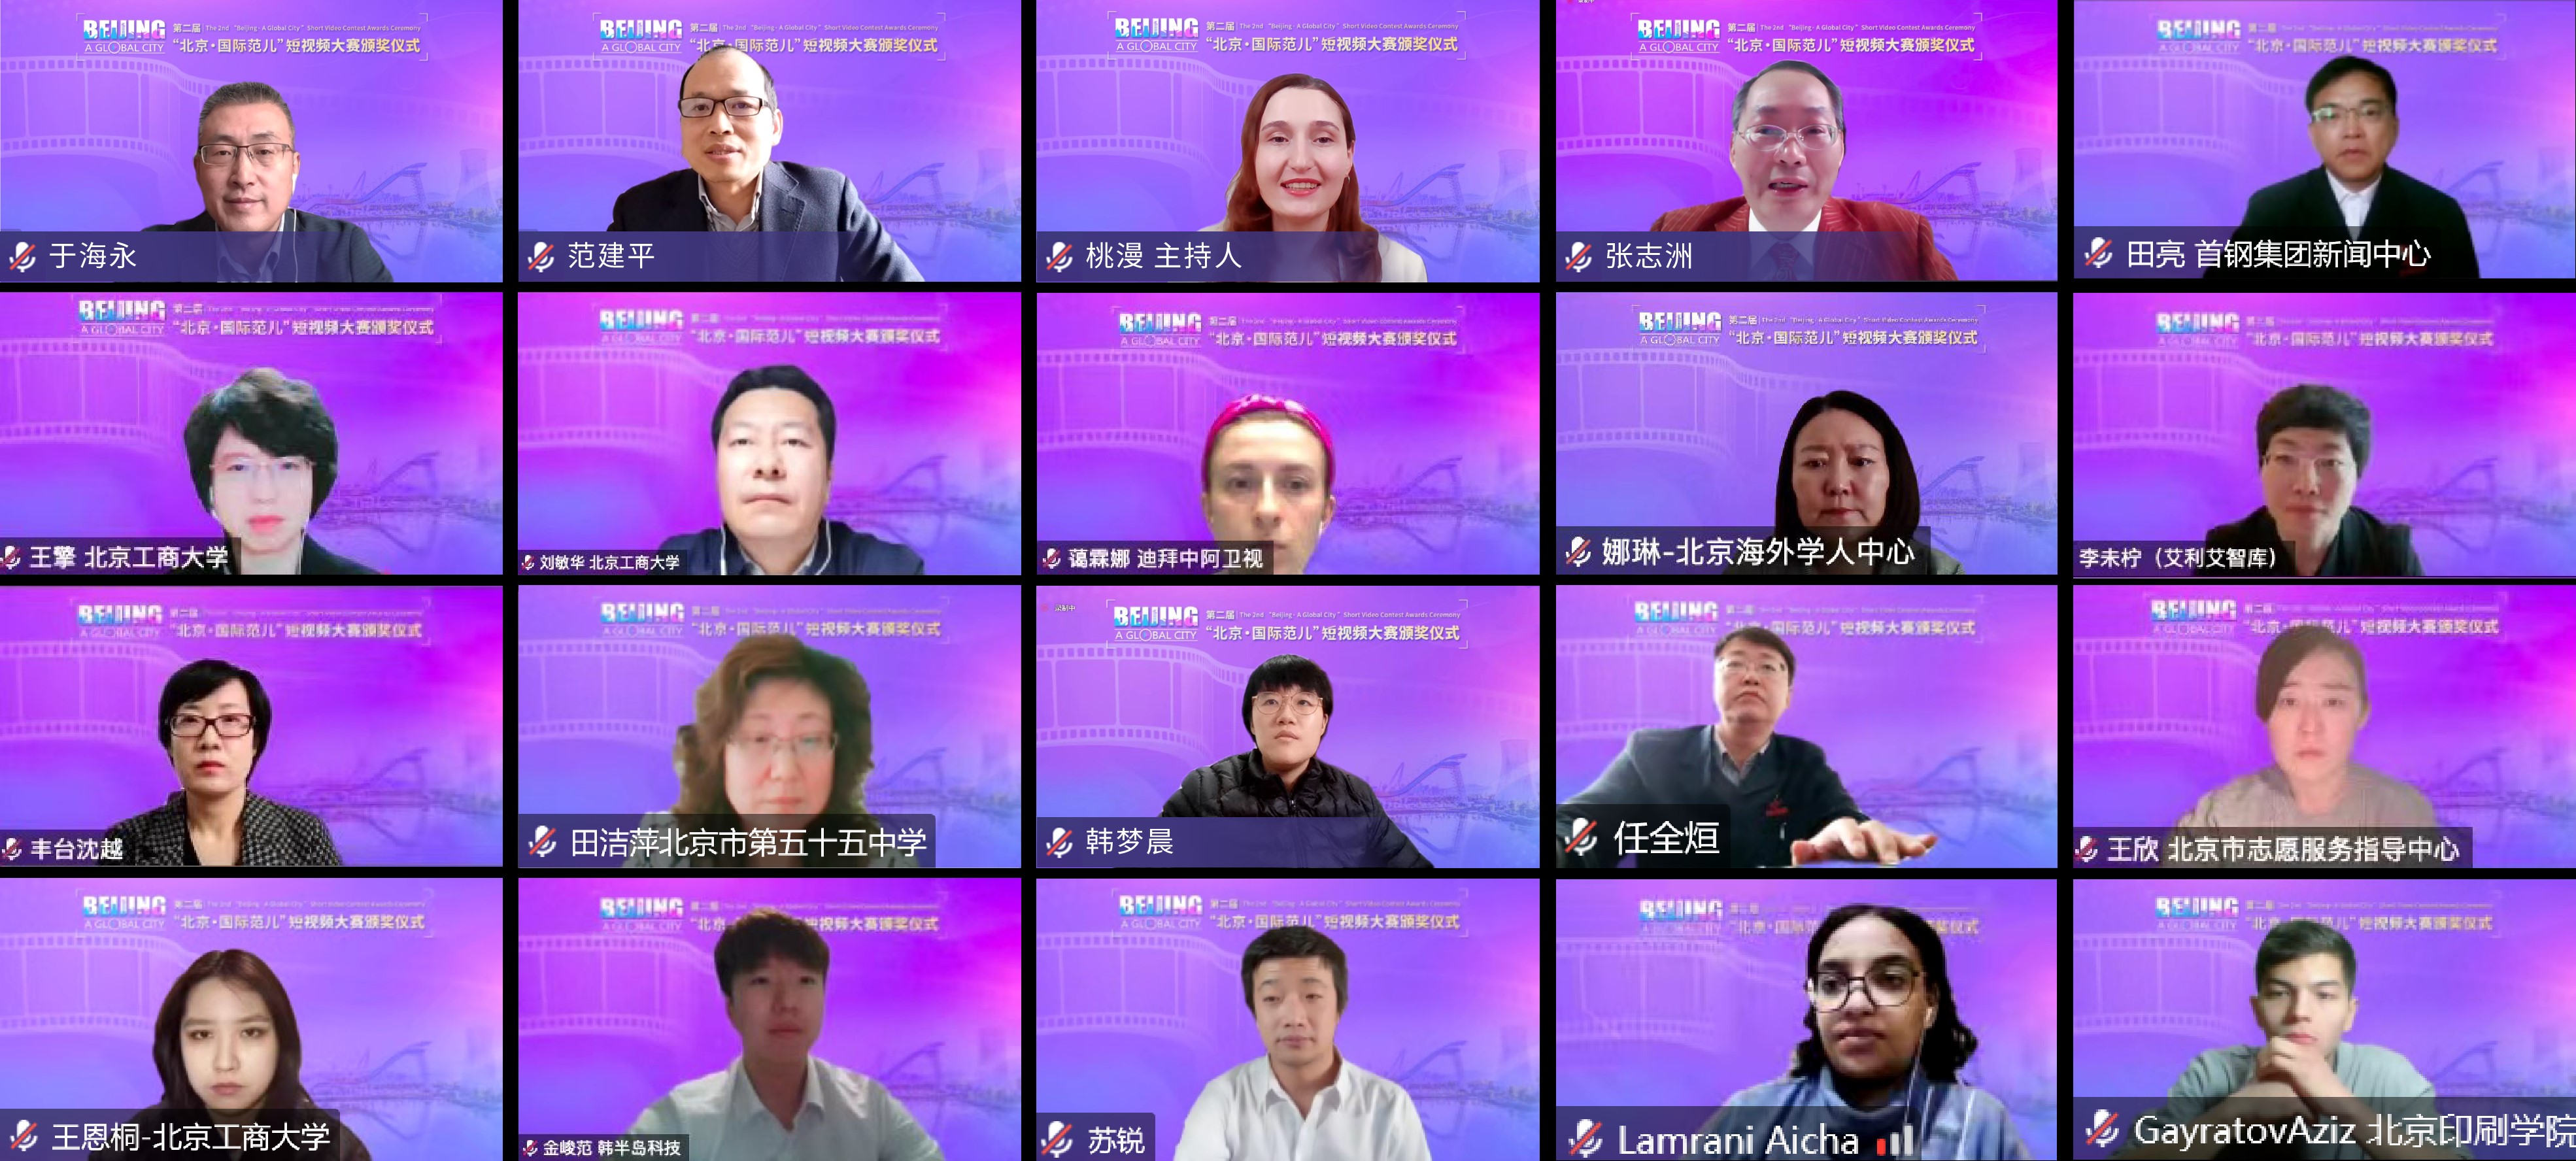 第二届“北京·国际范儿”短视频大赛闭幕式暨颁奖仪式线上举行.jpg